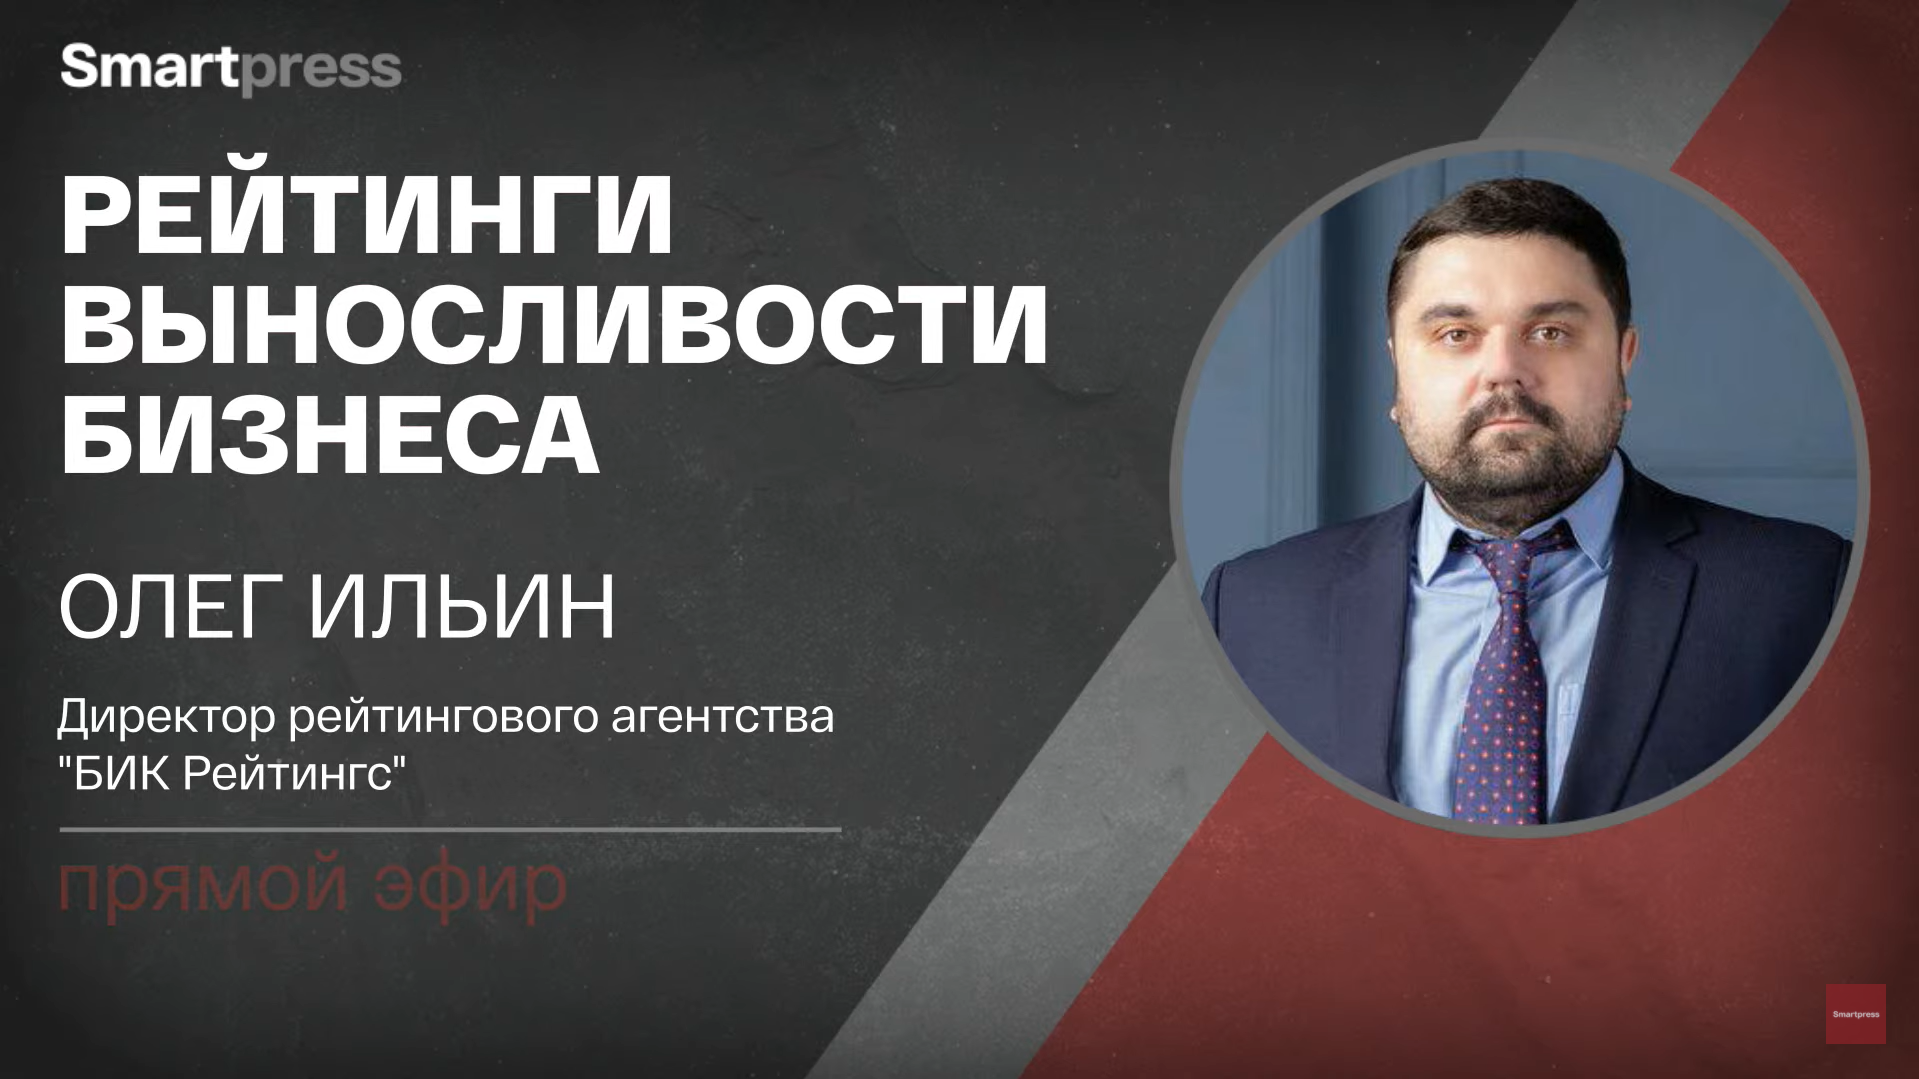 Олег Ильин в прямом эфире дал интервью Smartpress